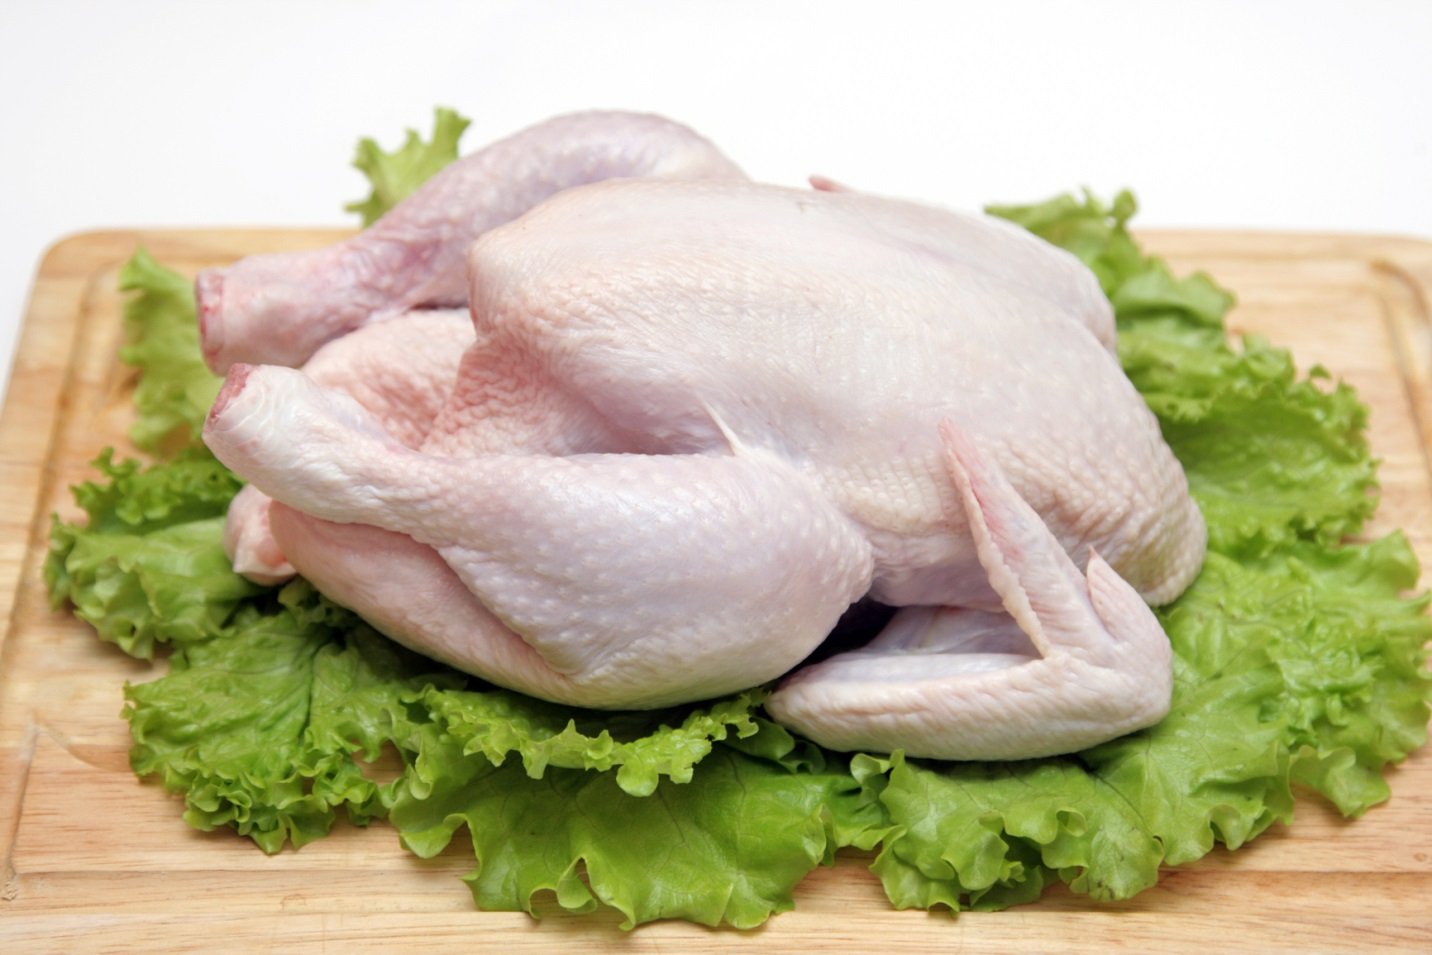 Содержание холестерина в грудке курицы очень низкое